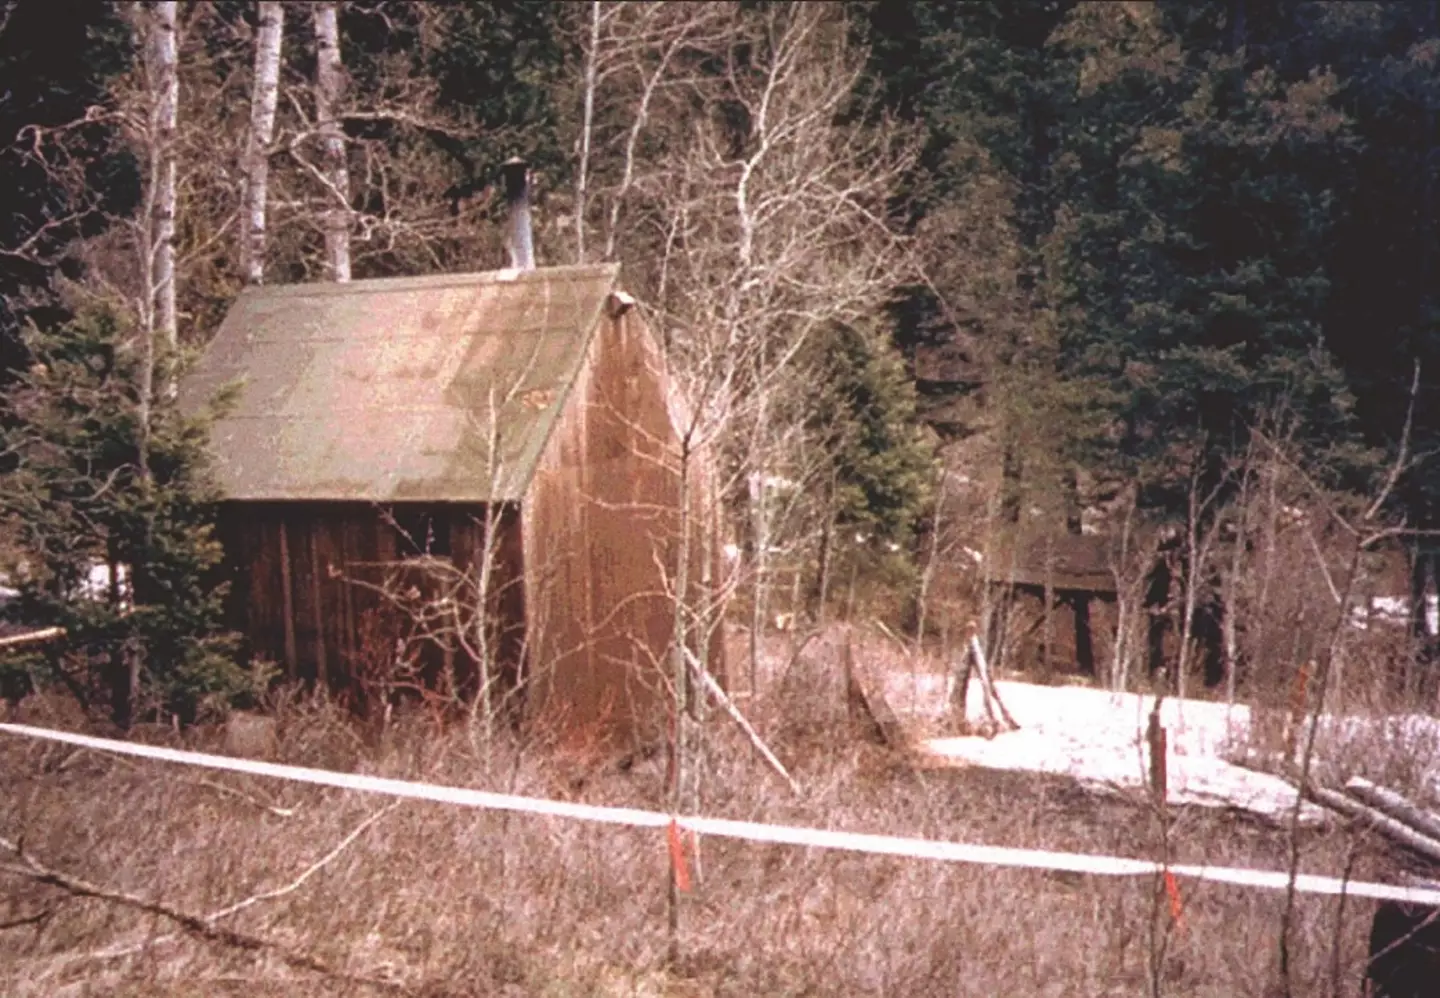 Ted Kaczynski's Montana cabin.